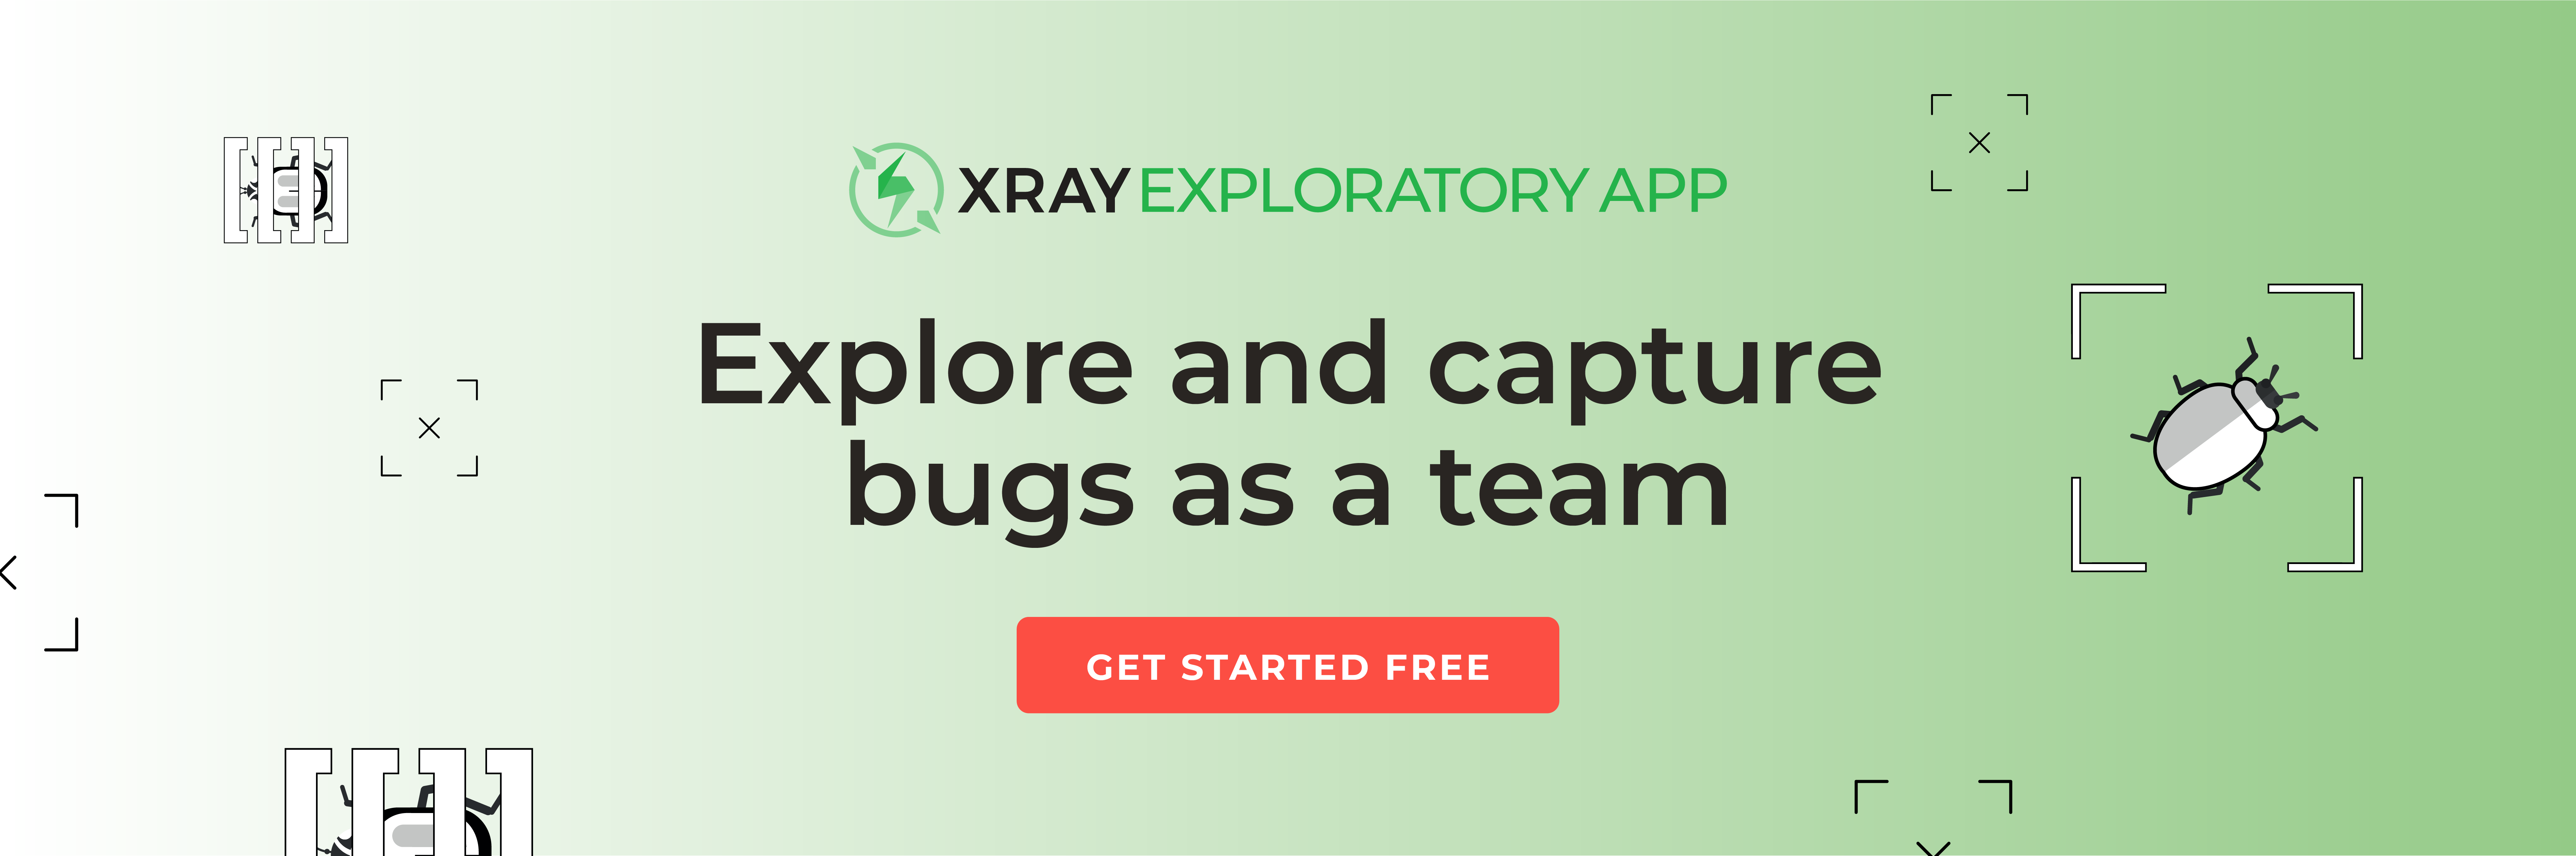 Xray Exploratory App Banner